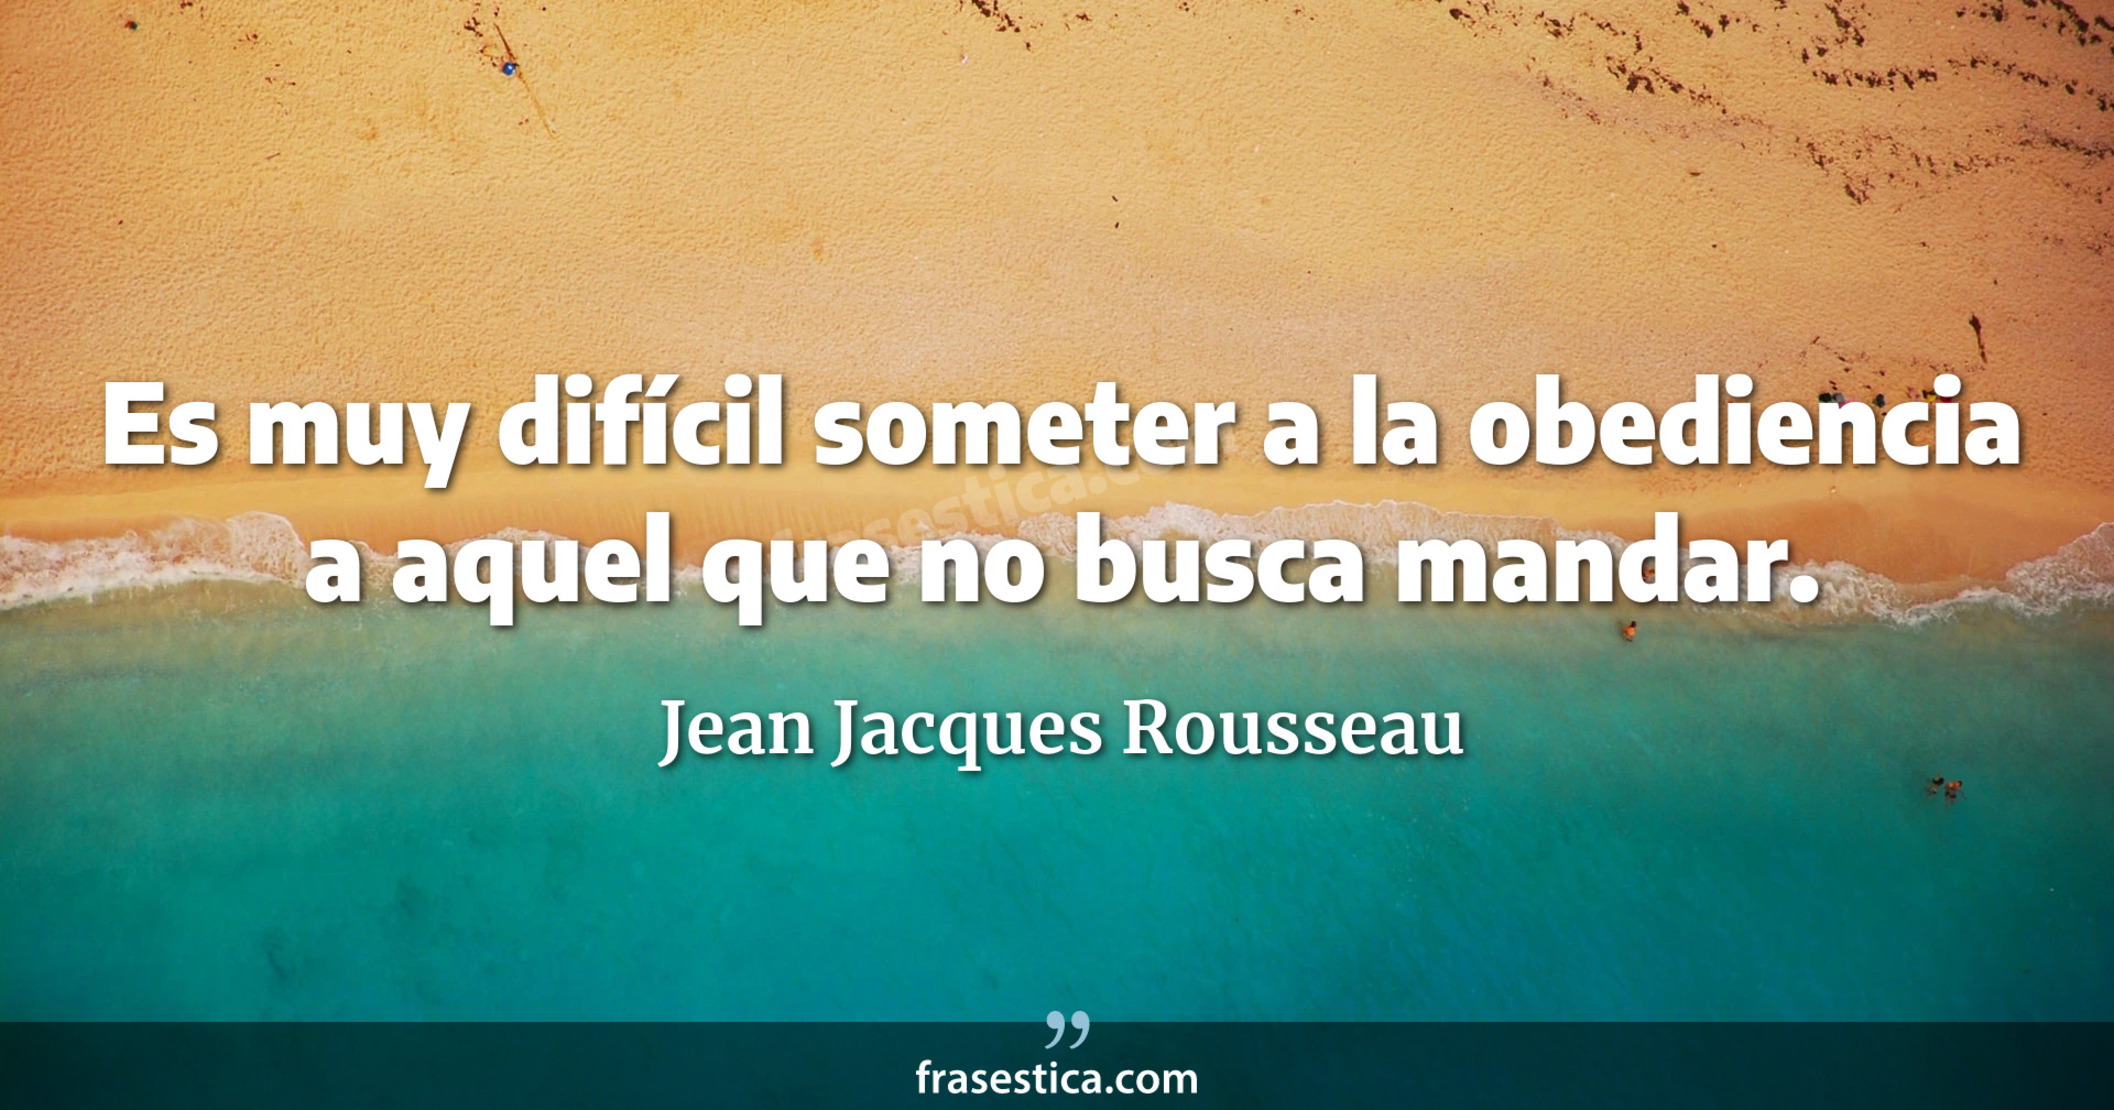 Es muy difícil someter a la obediencia a aquel que no busca mandar. - Jean Jacques Rousseau